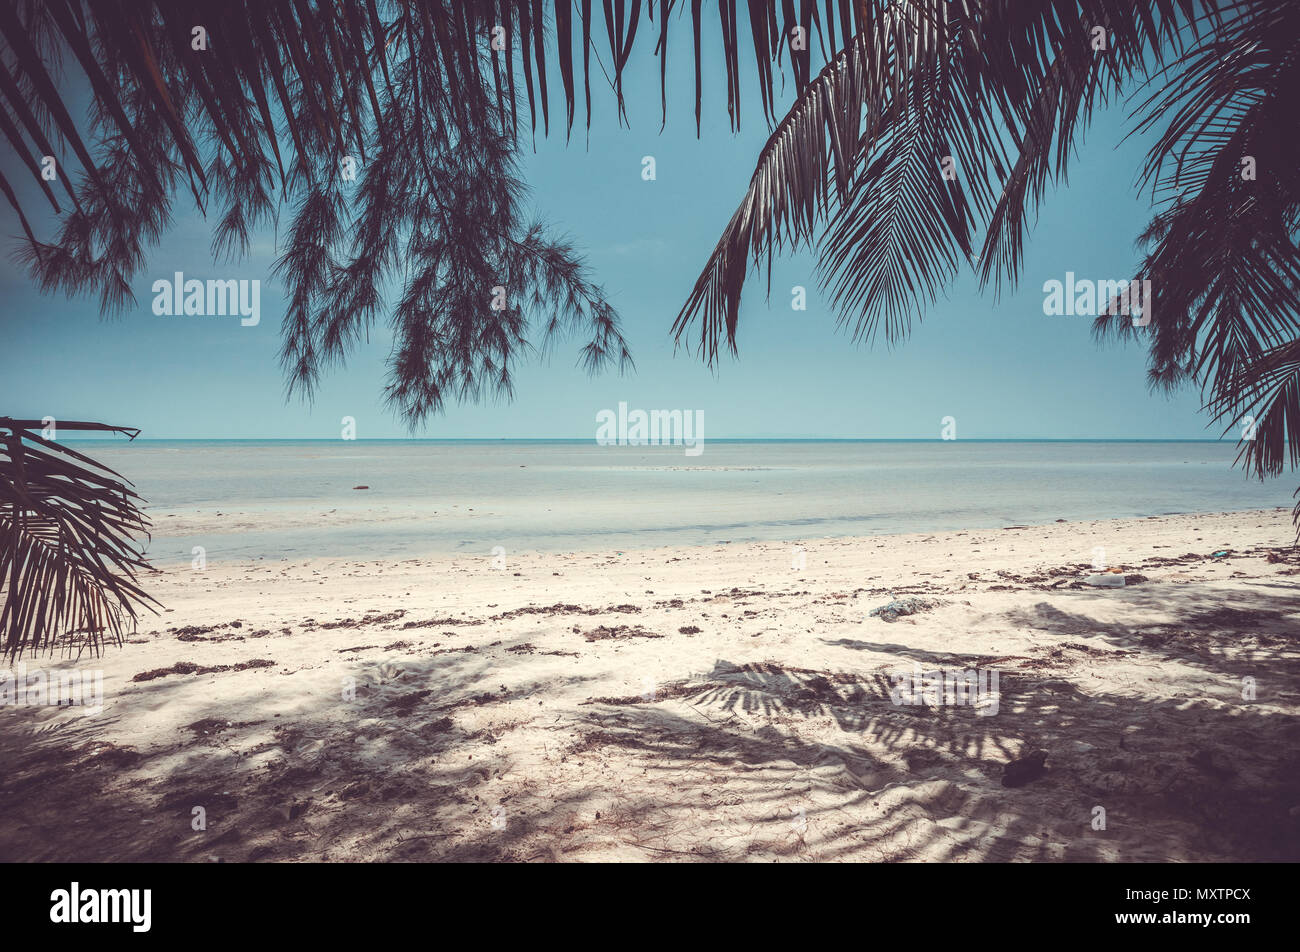 Paesaggi mozzafiato la sabbia a riva del mare calmo e la spiaggia circondata da piante tropicali nell'isola esotica. Regno di Thailandia. Lo sfondo perfetto per le illustrazioni e collage. Foto Stock